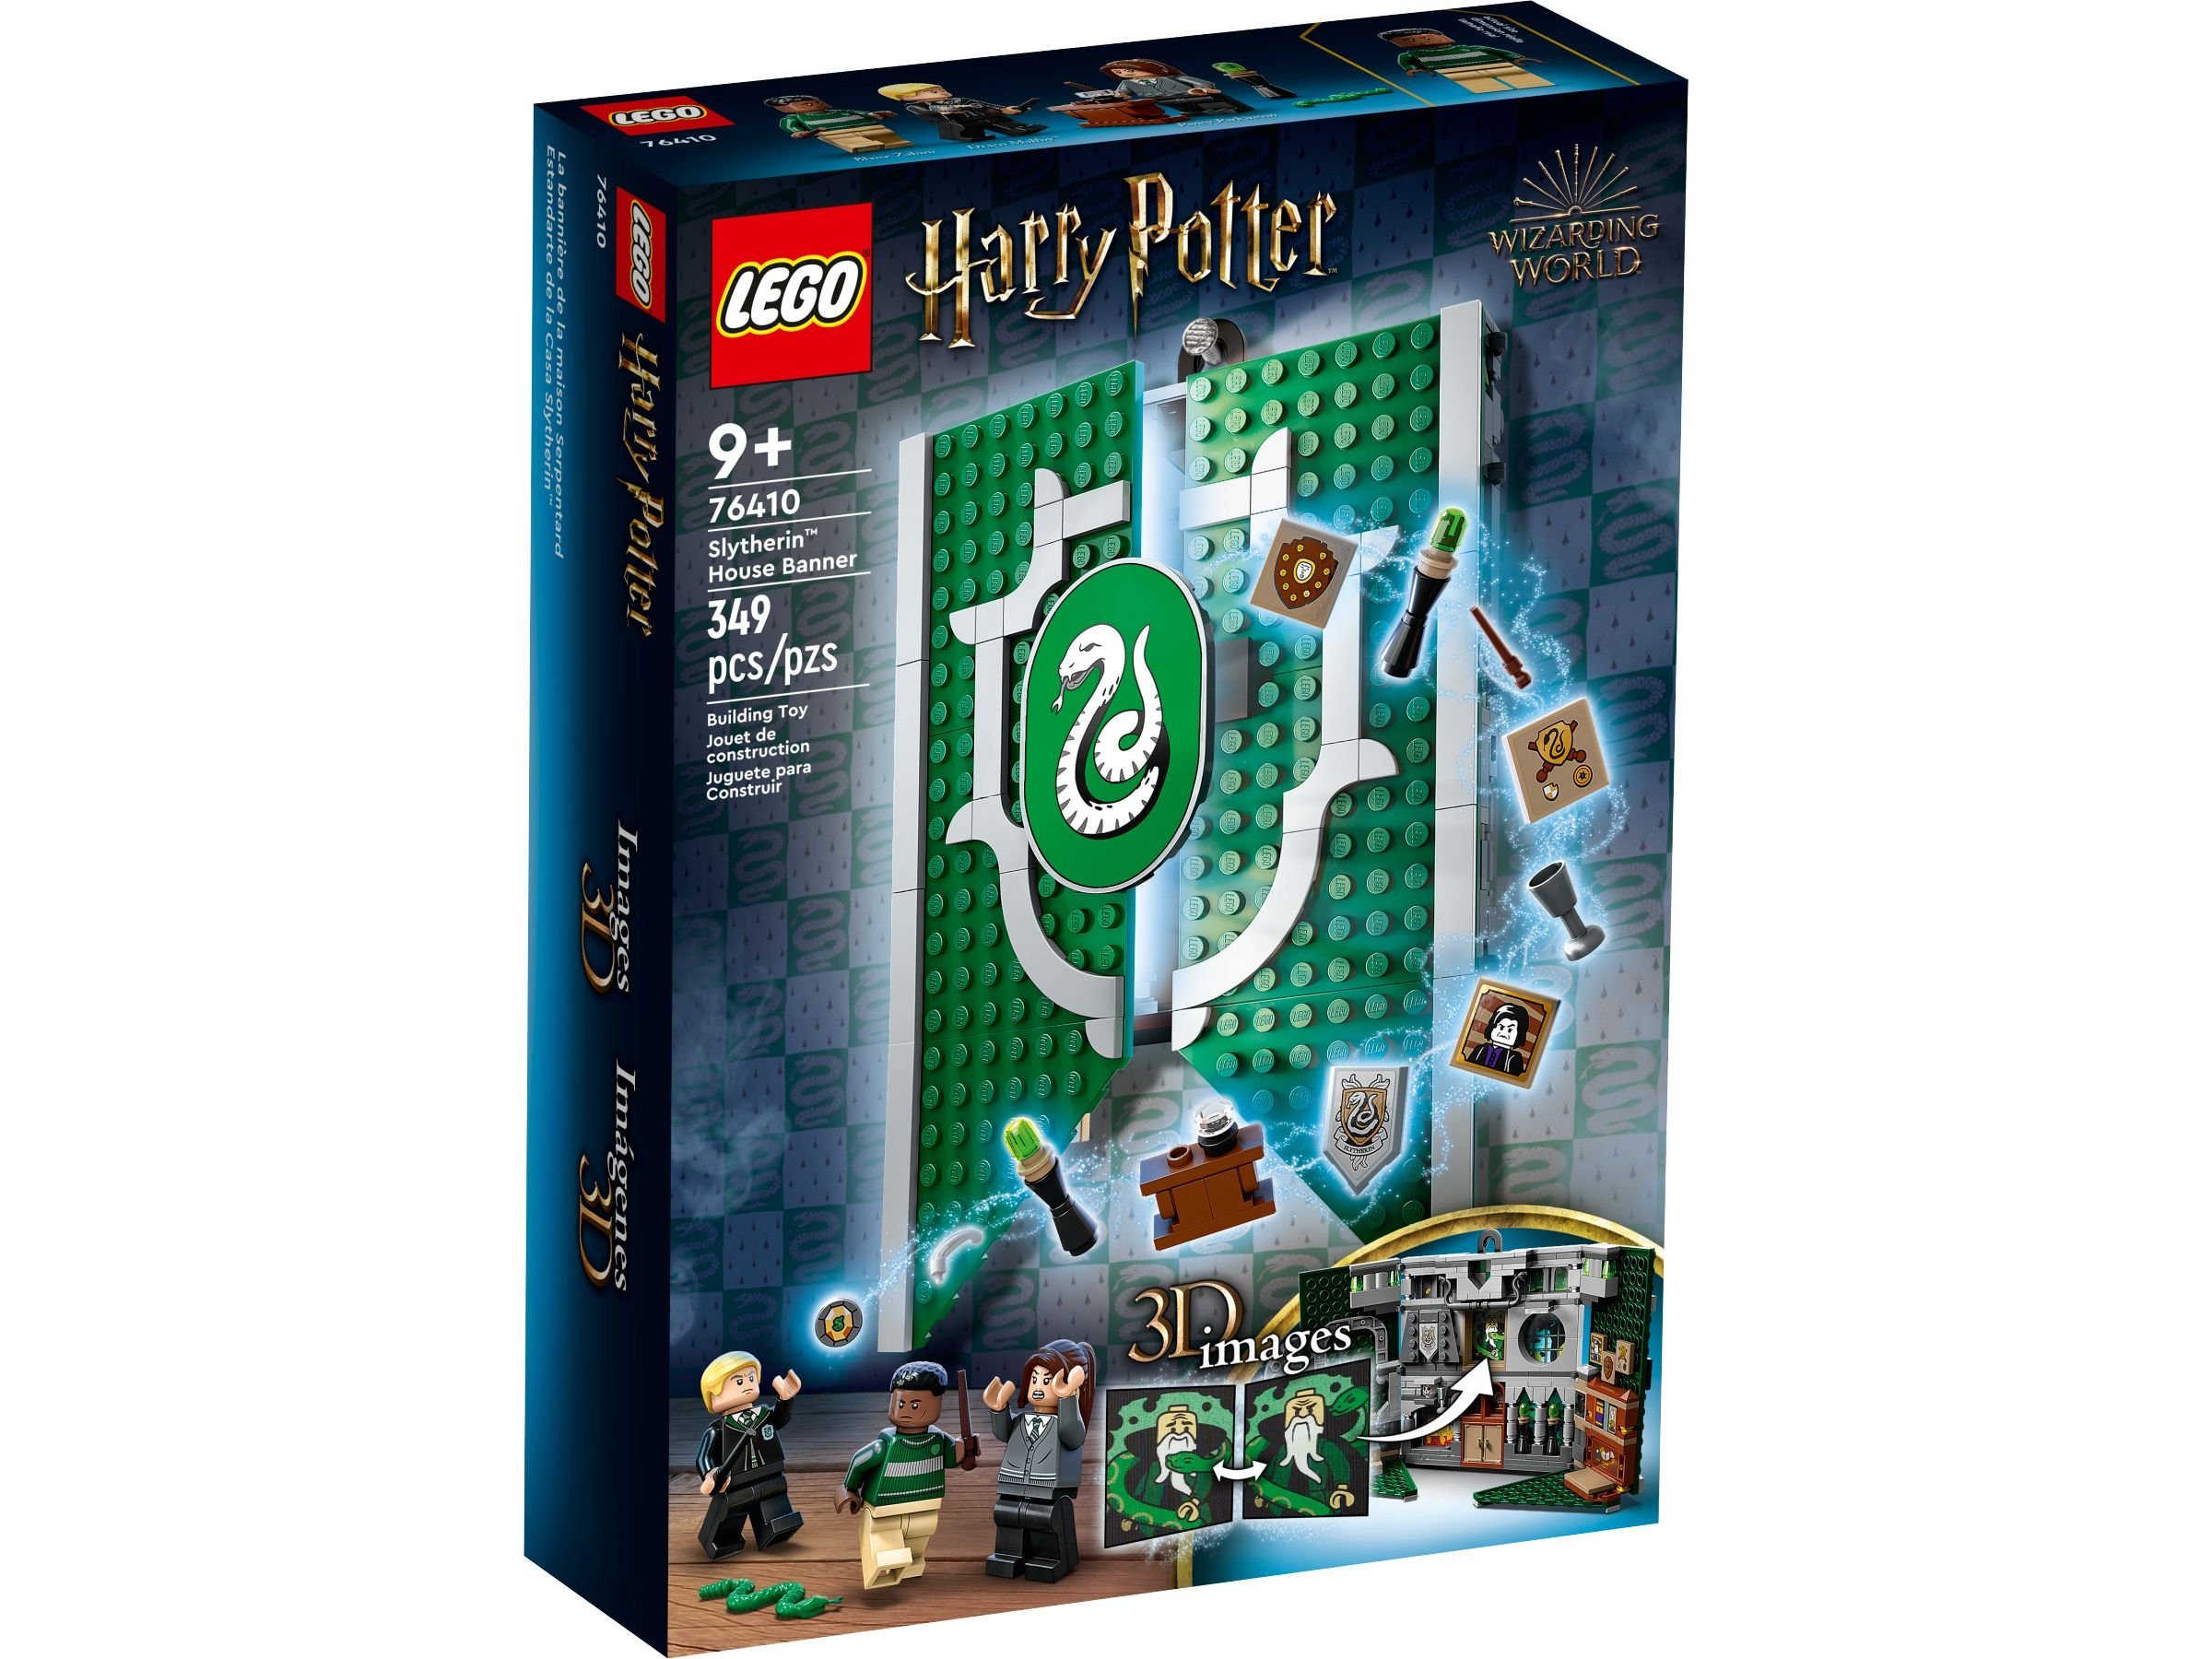 LEGO Harry Potter 5008138 Paket: Treue und Zielstrebigkeit LEGO_76410_alt1.jpg